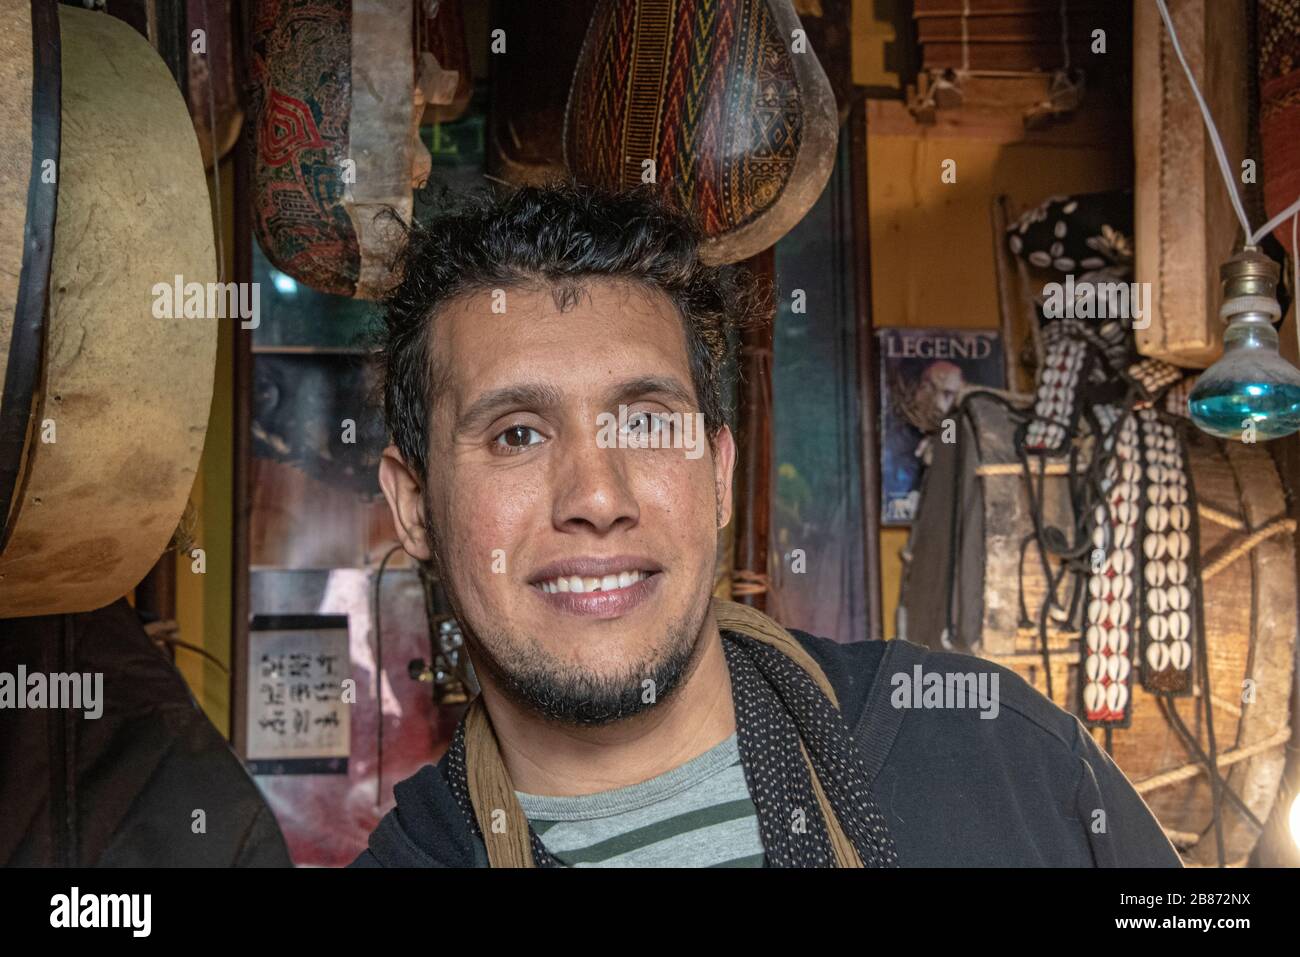 Essaouria, Maroc - septembre 2017 : Portrait lumière naturelle d'un homme marocain, mi-30, debout dans un magasin entouré d'instruments Banque D'Images